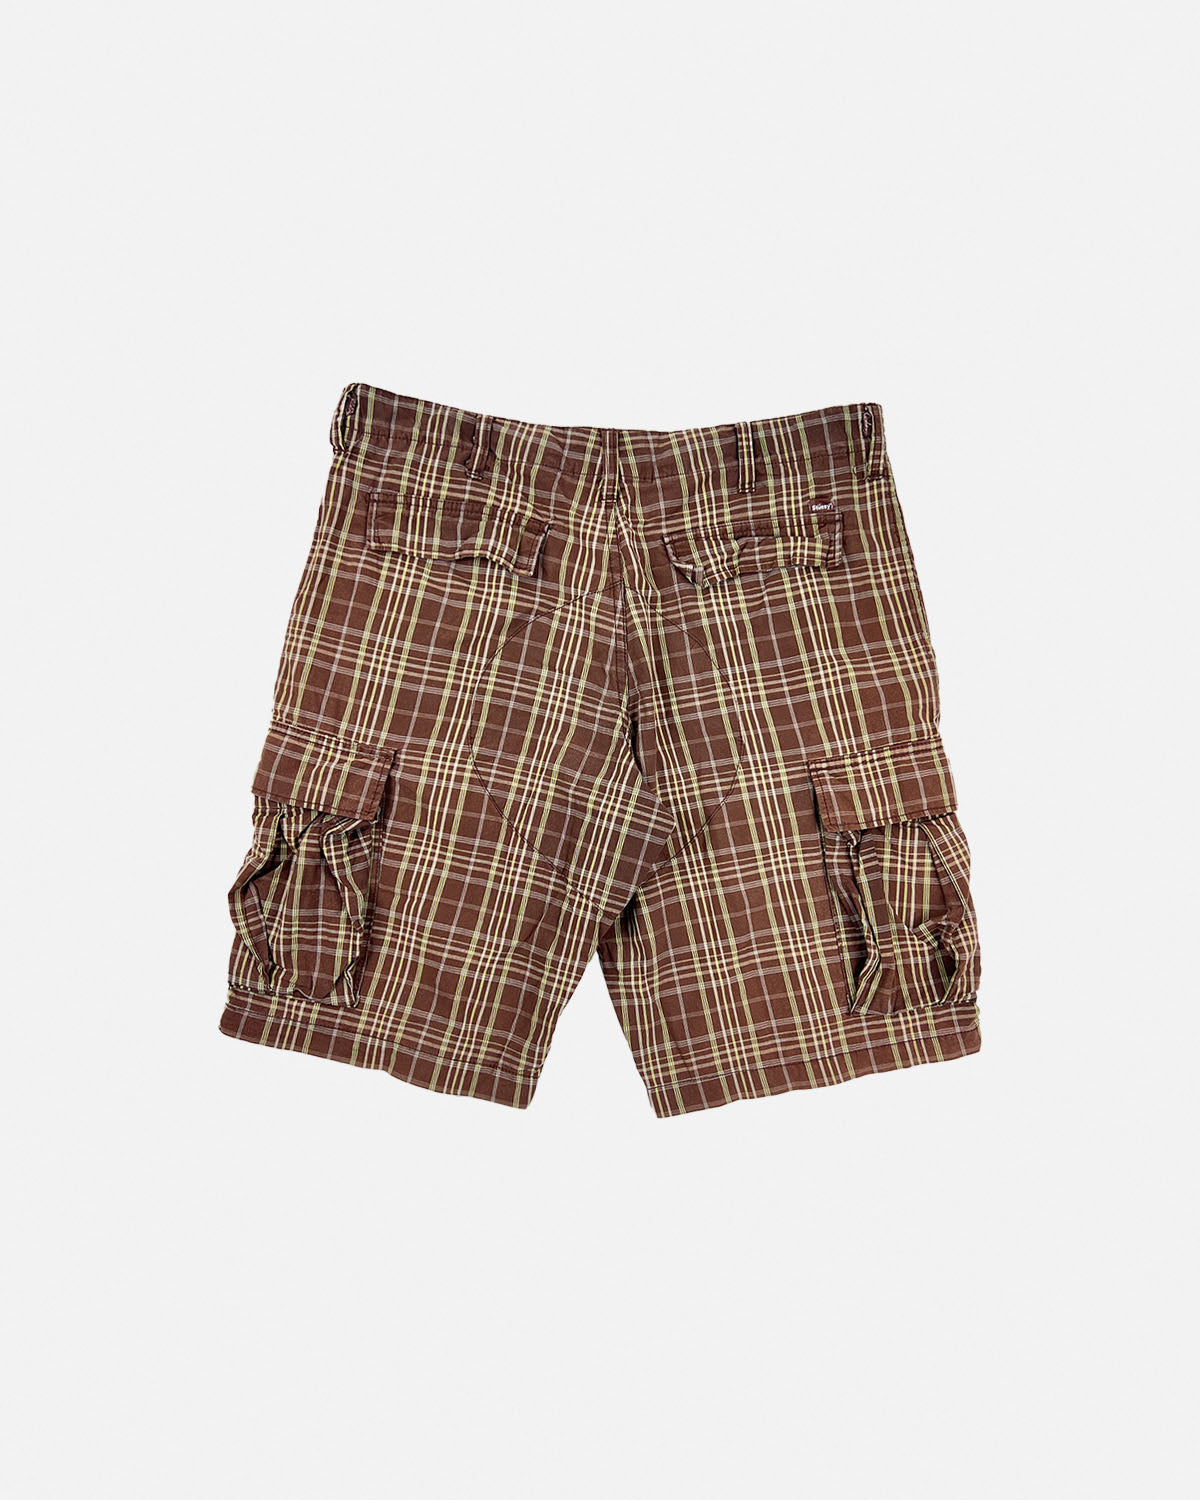 Stüssy Brown Plaid Shorts